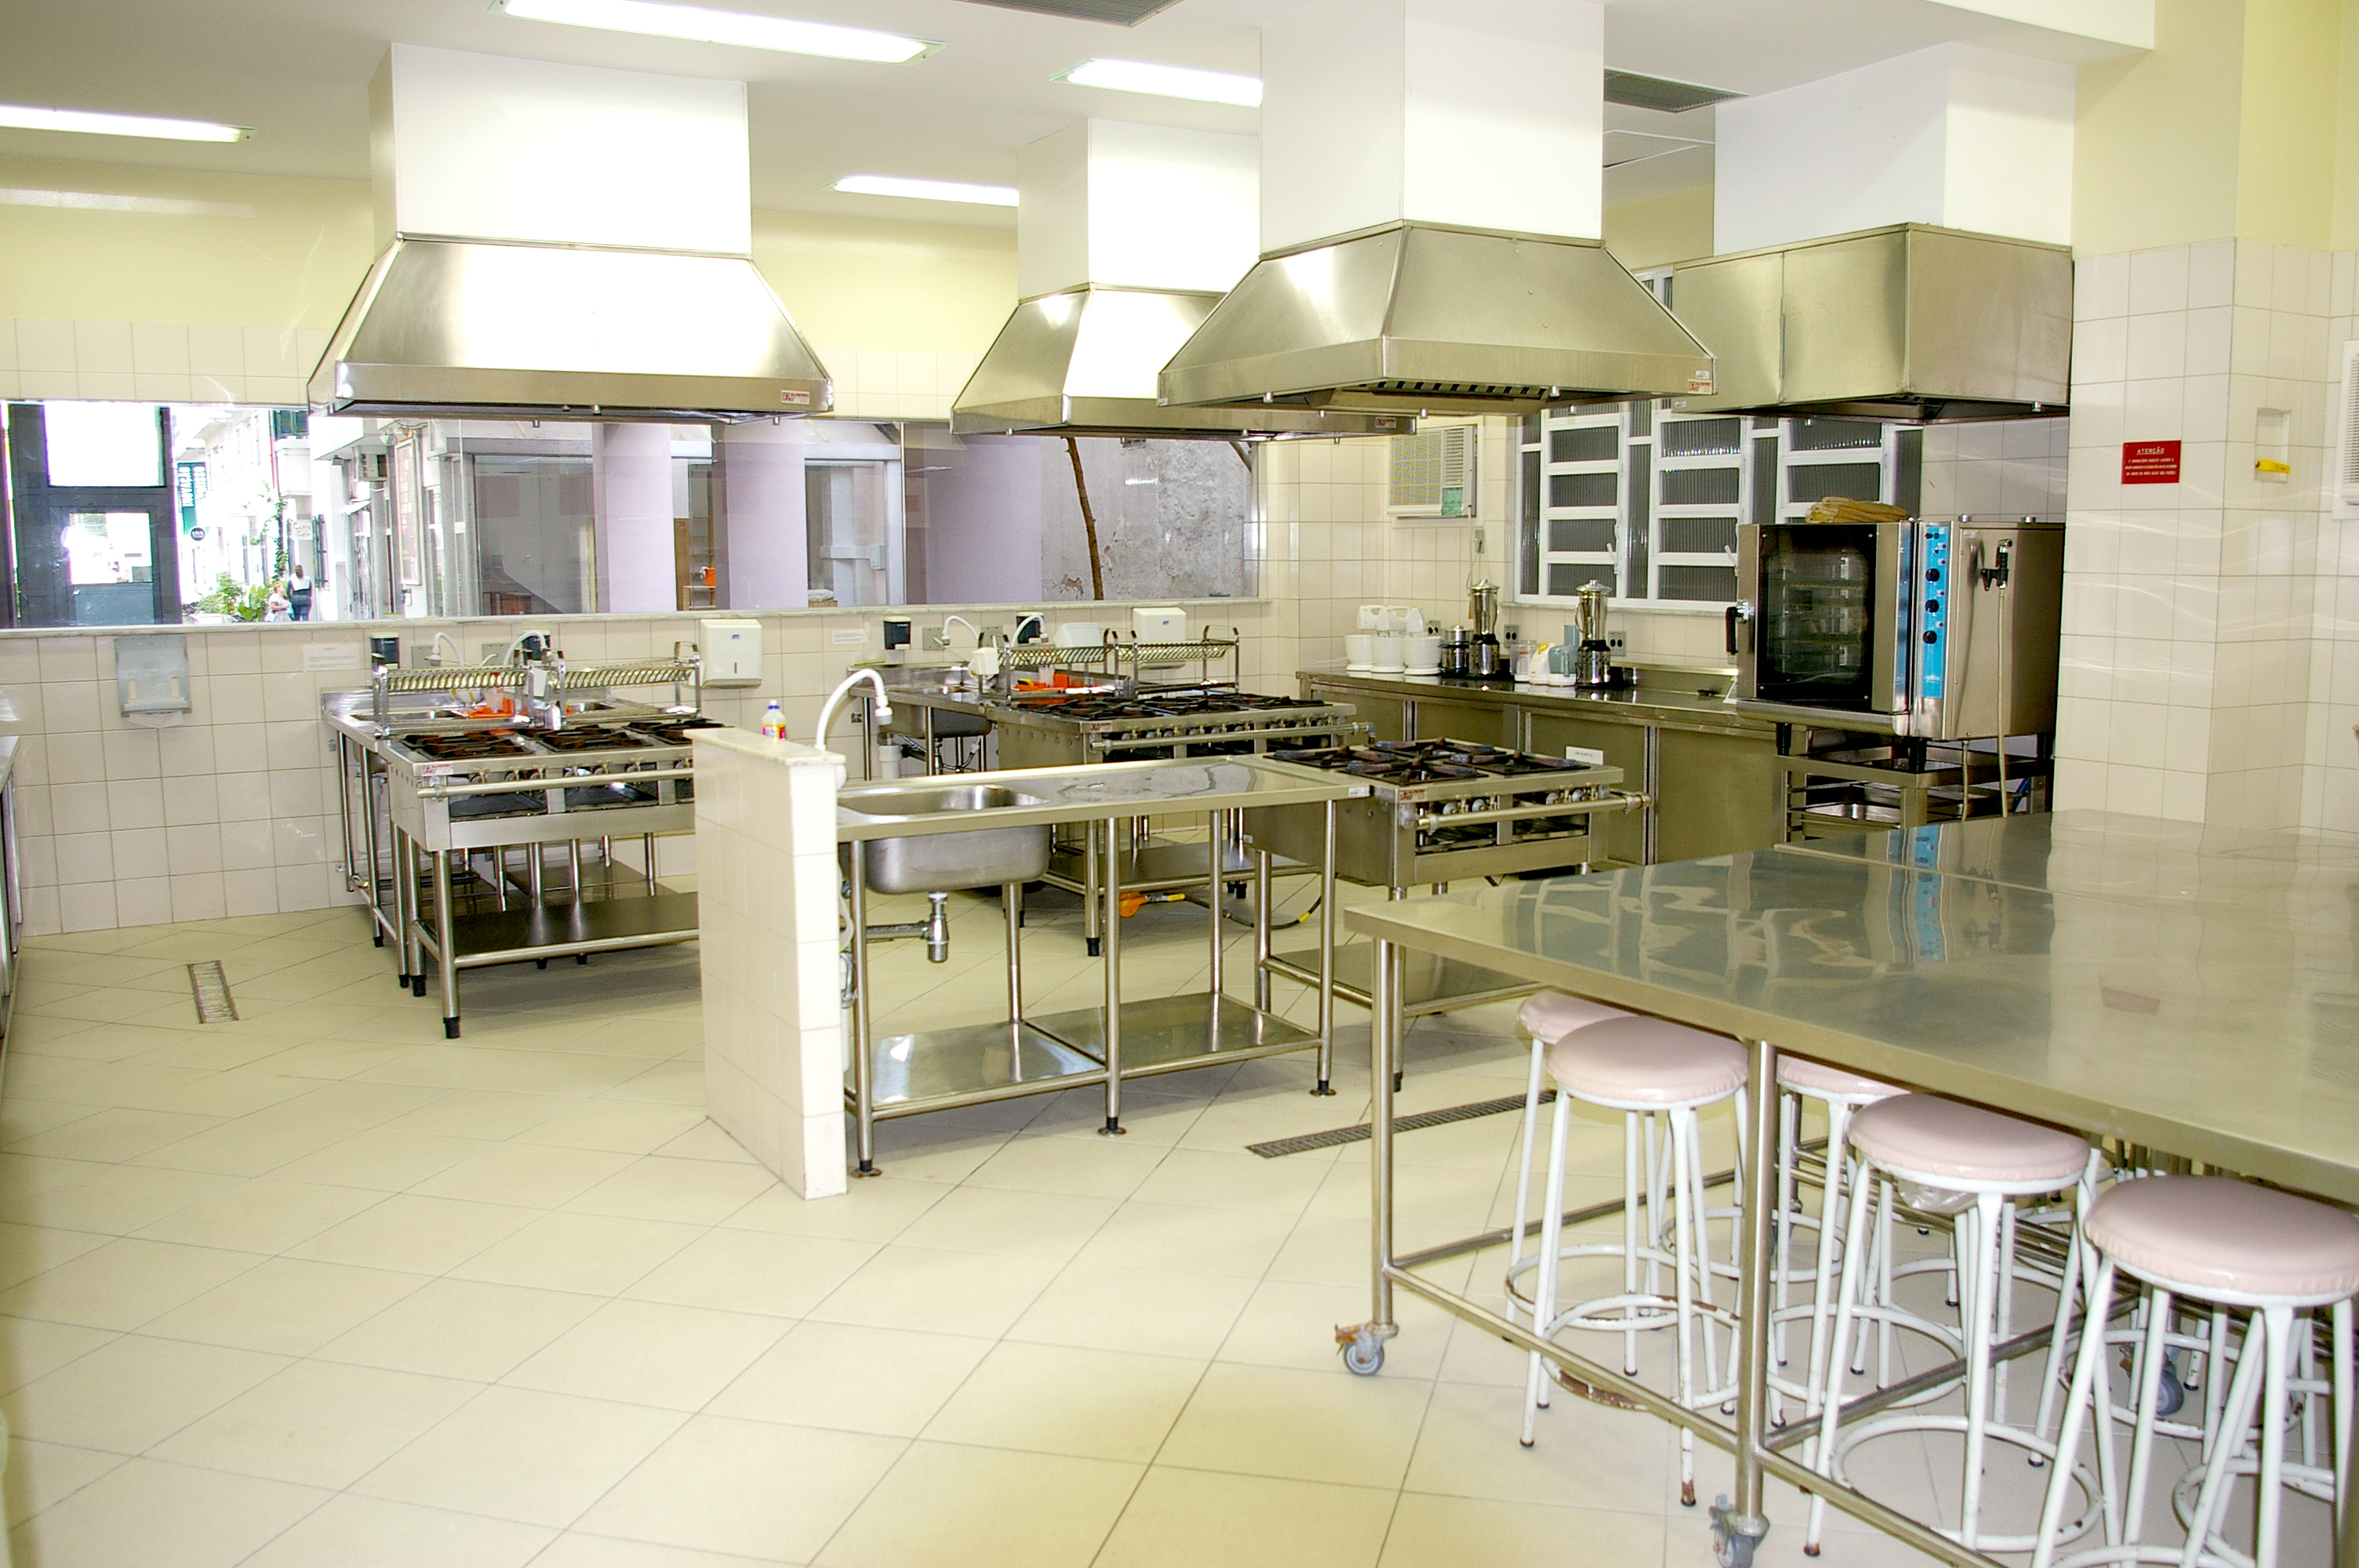 Food safety - clean kitchen